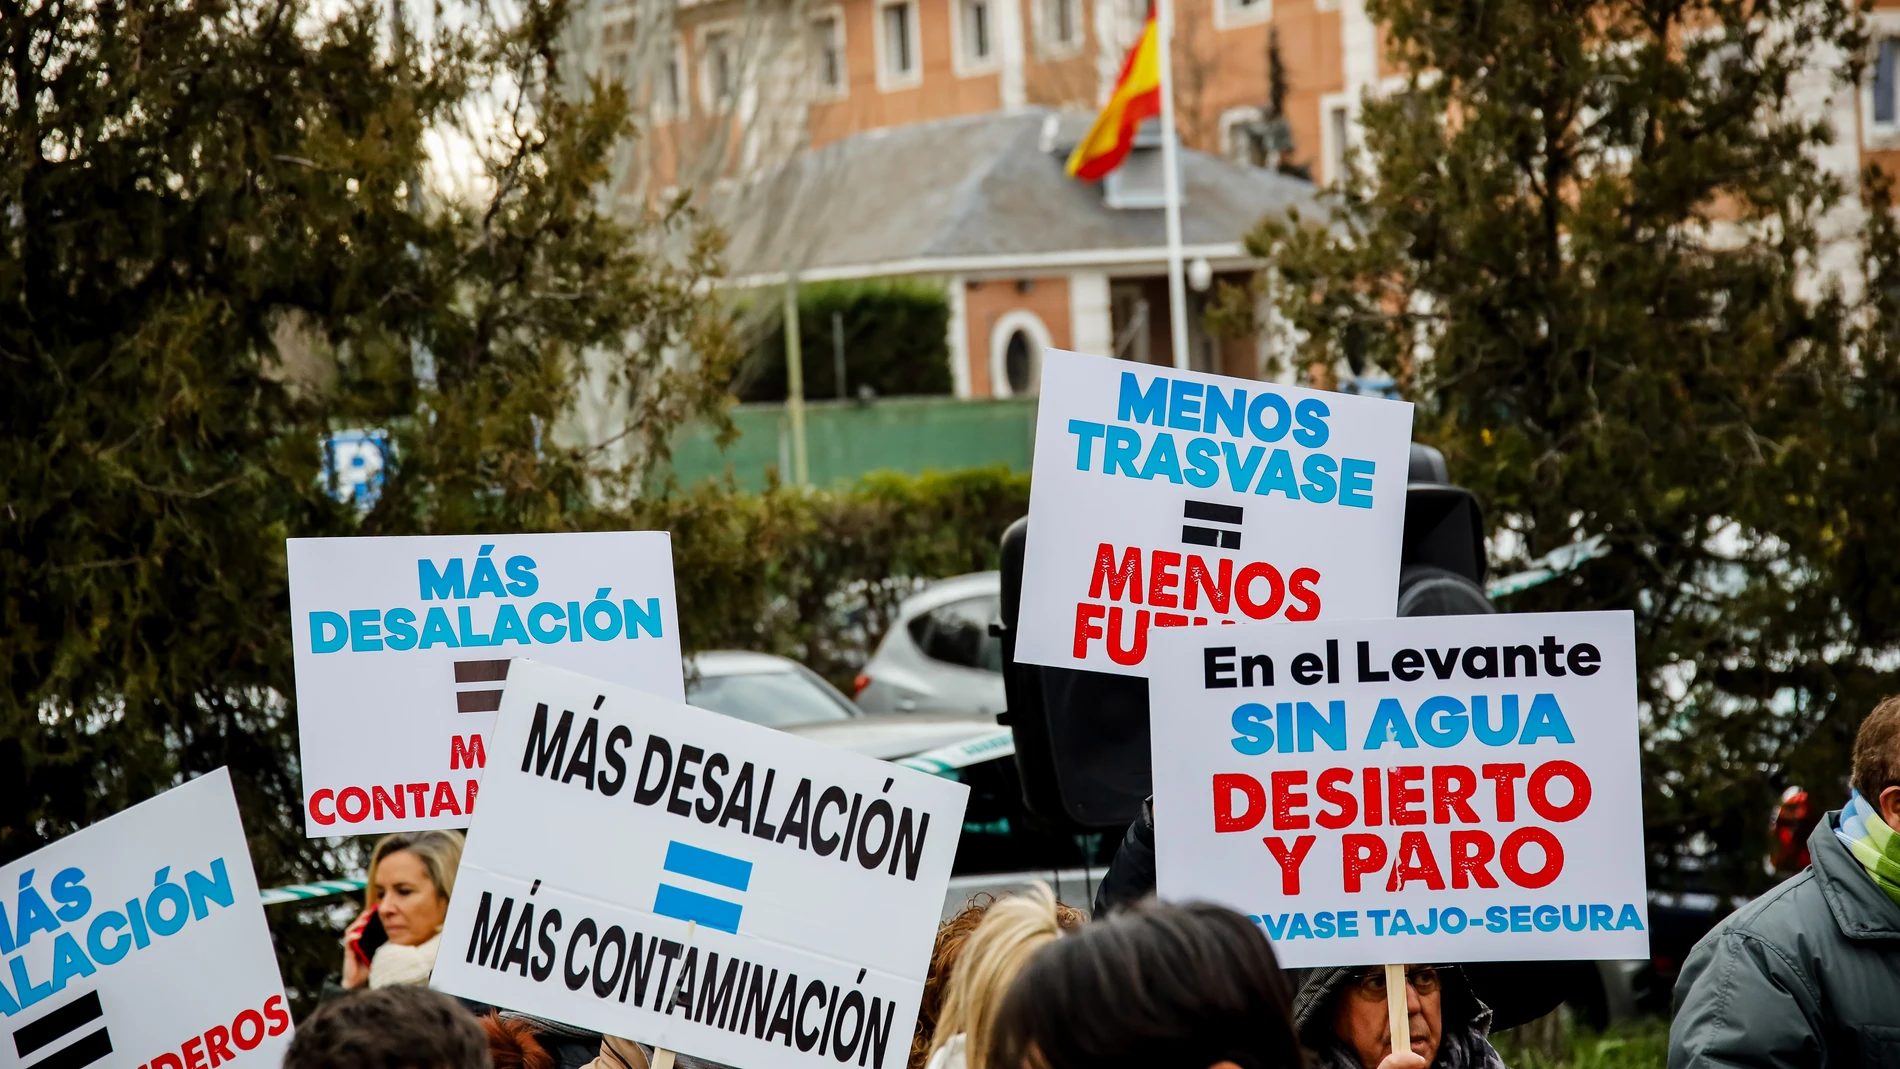 Pancartas durante una concentración para evitar que recorten el trasvase Tajo-Segura, en las inmediaciones del Palacio de la Moncloa